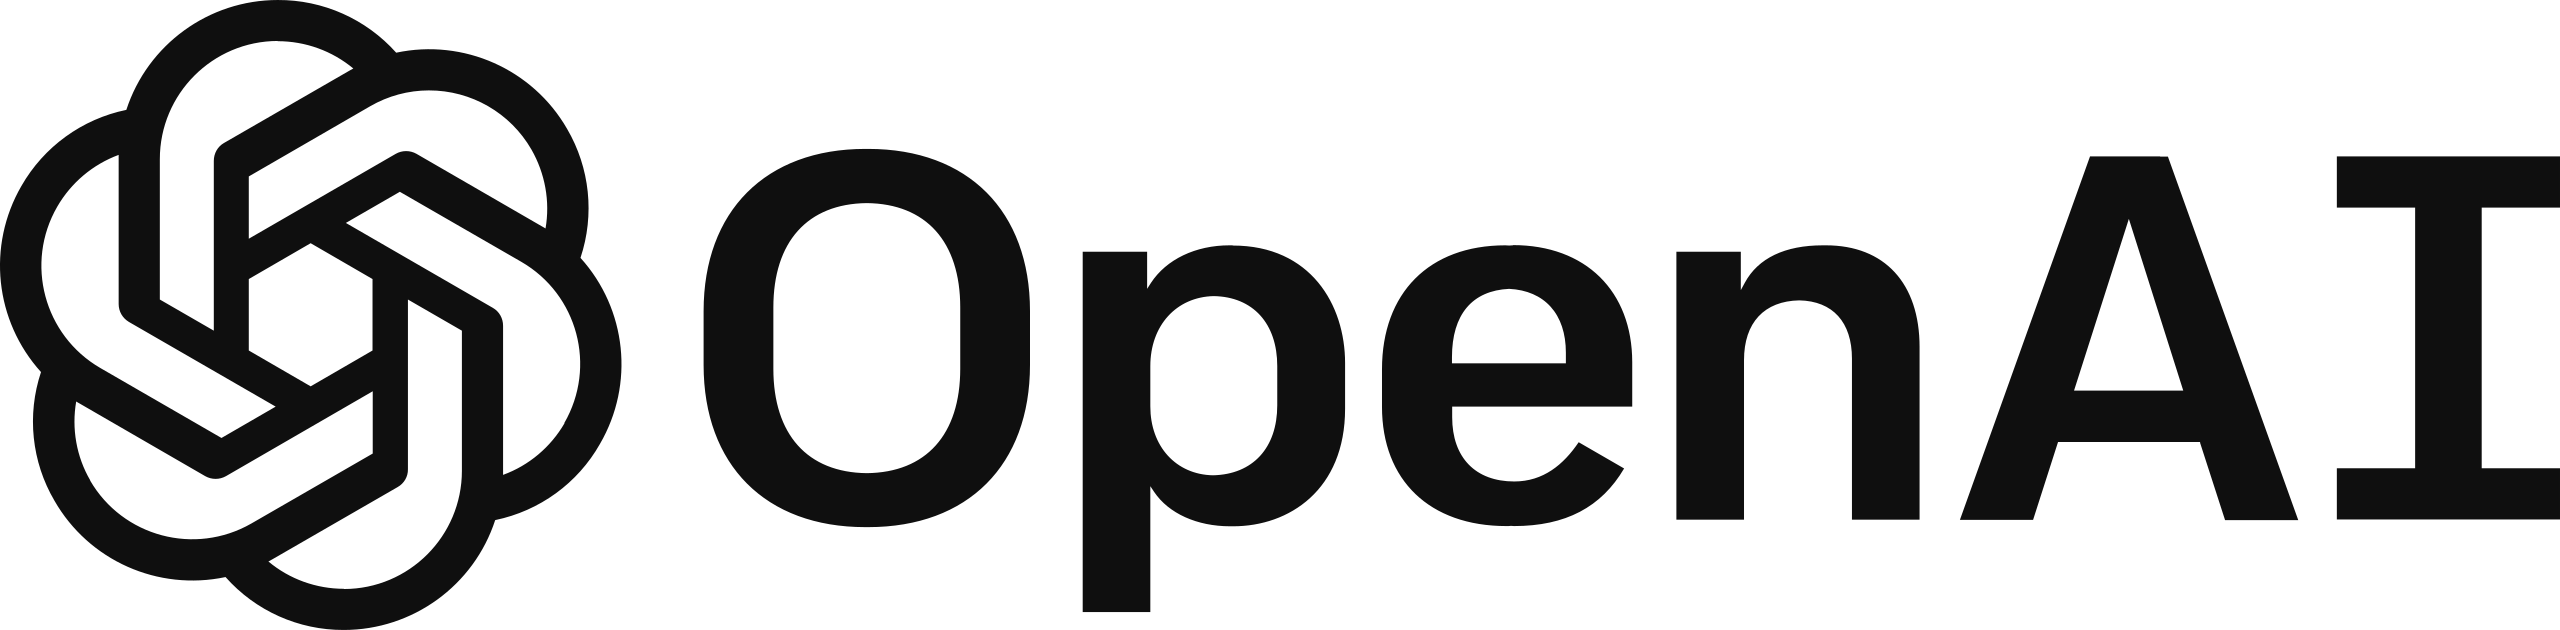 Logo de OpenAI